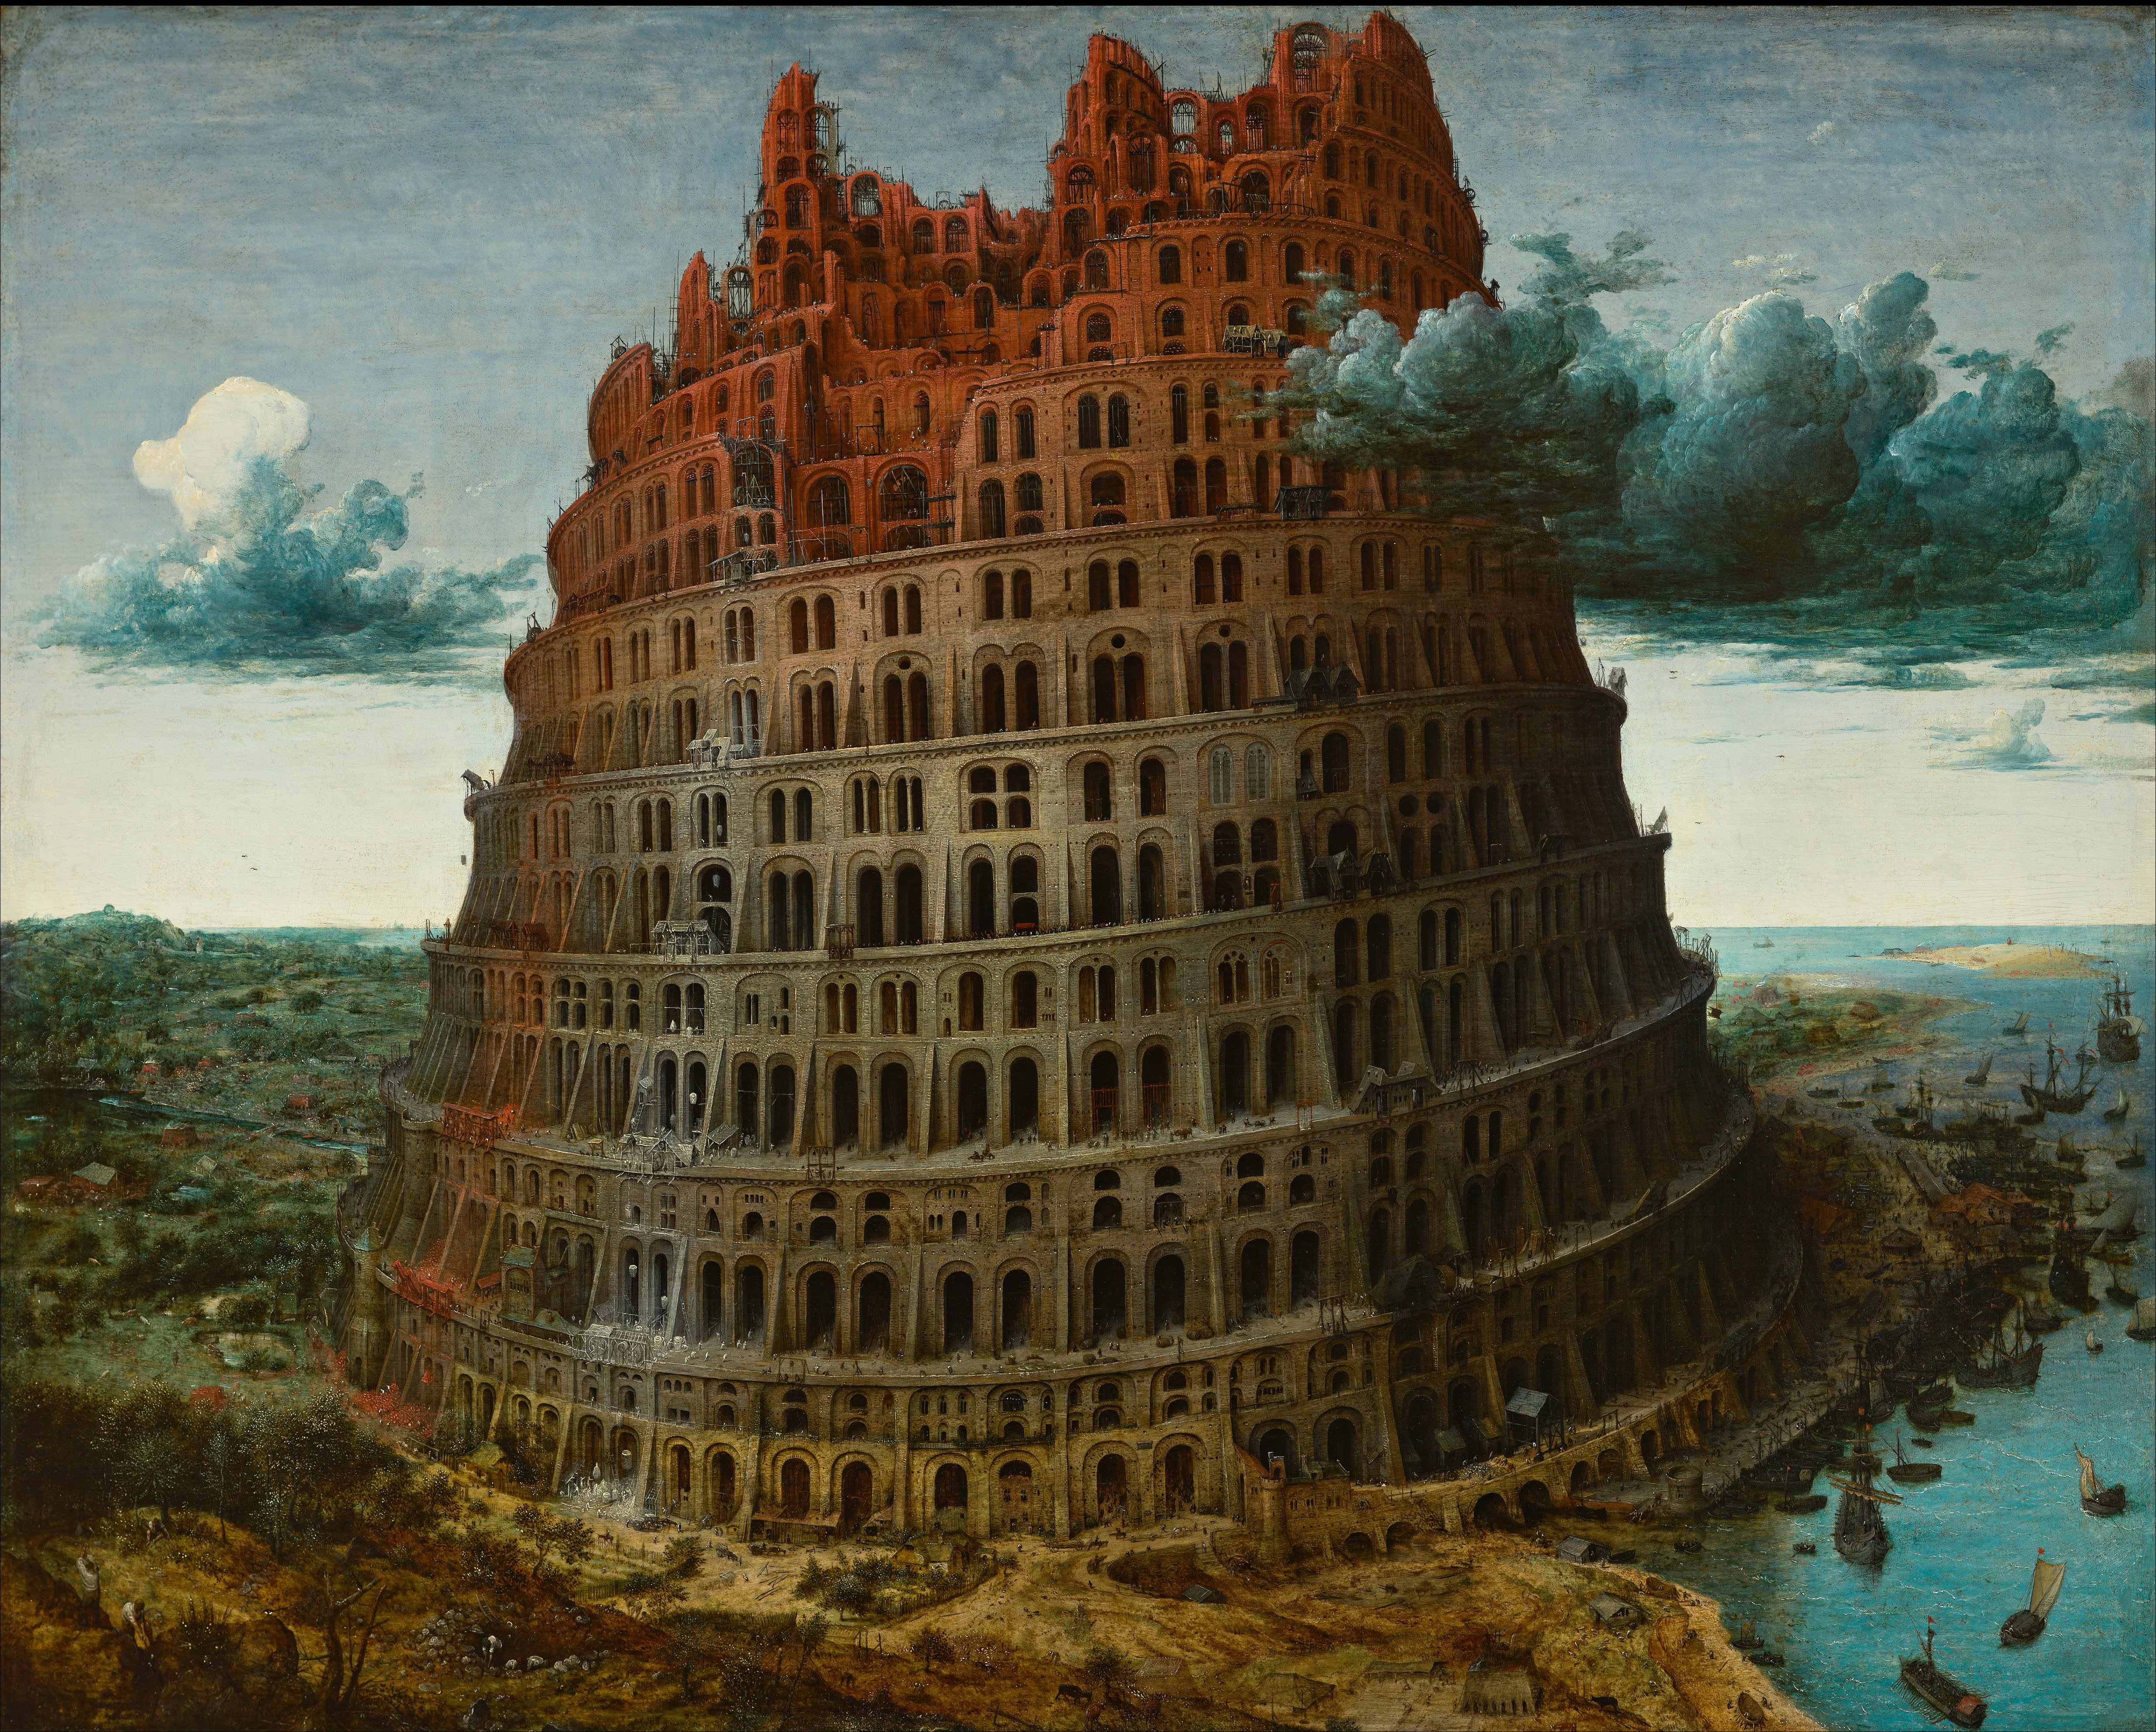 Pieter_Bruegel_the_Elder_-_The_Tower_of_Babel_(Rotterdam)_-_Google_Art_Project.jpg